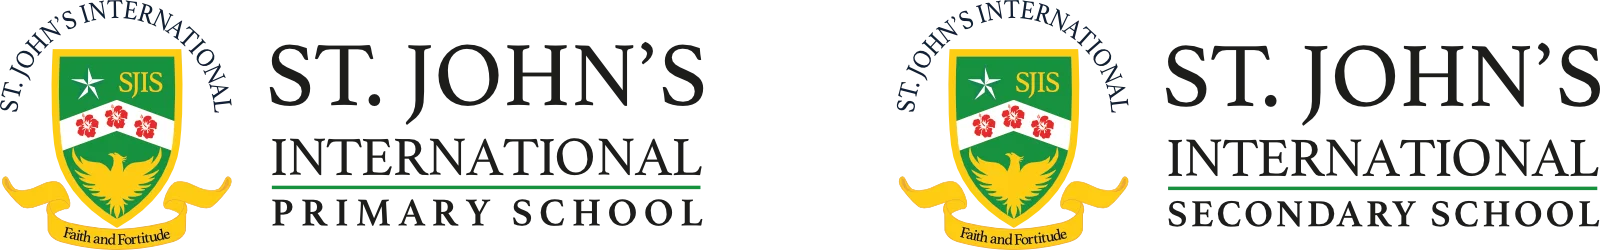 SJIS Primary & Secondary Logos